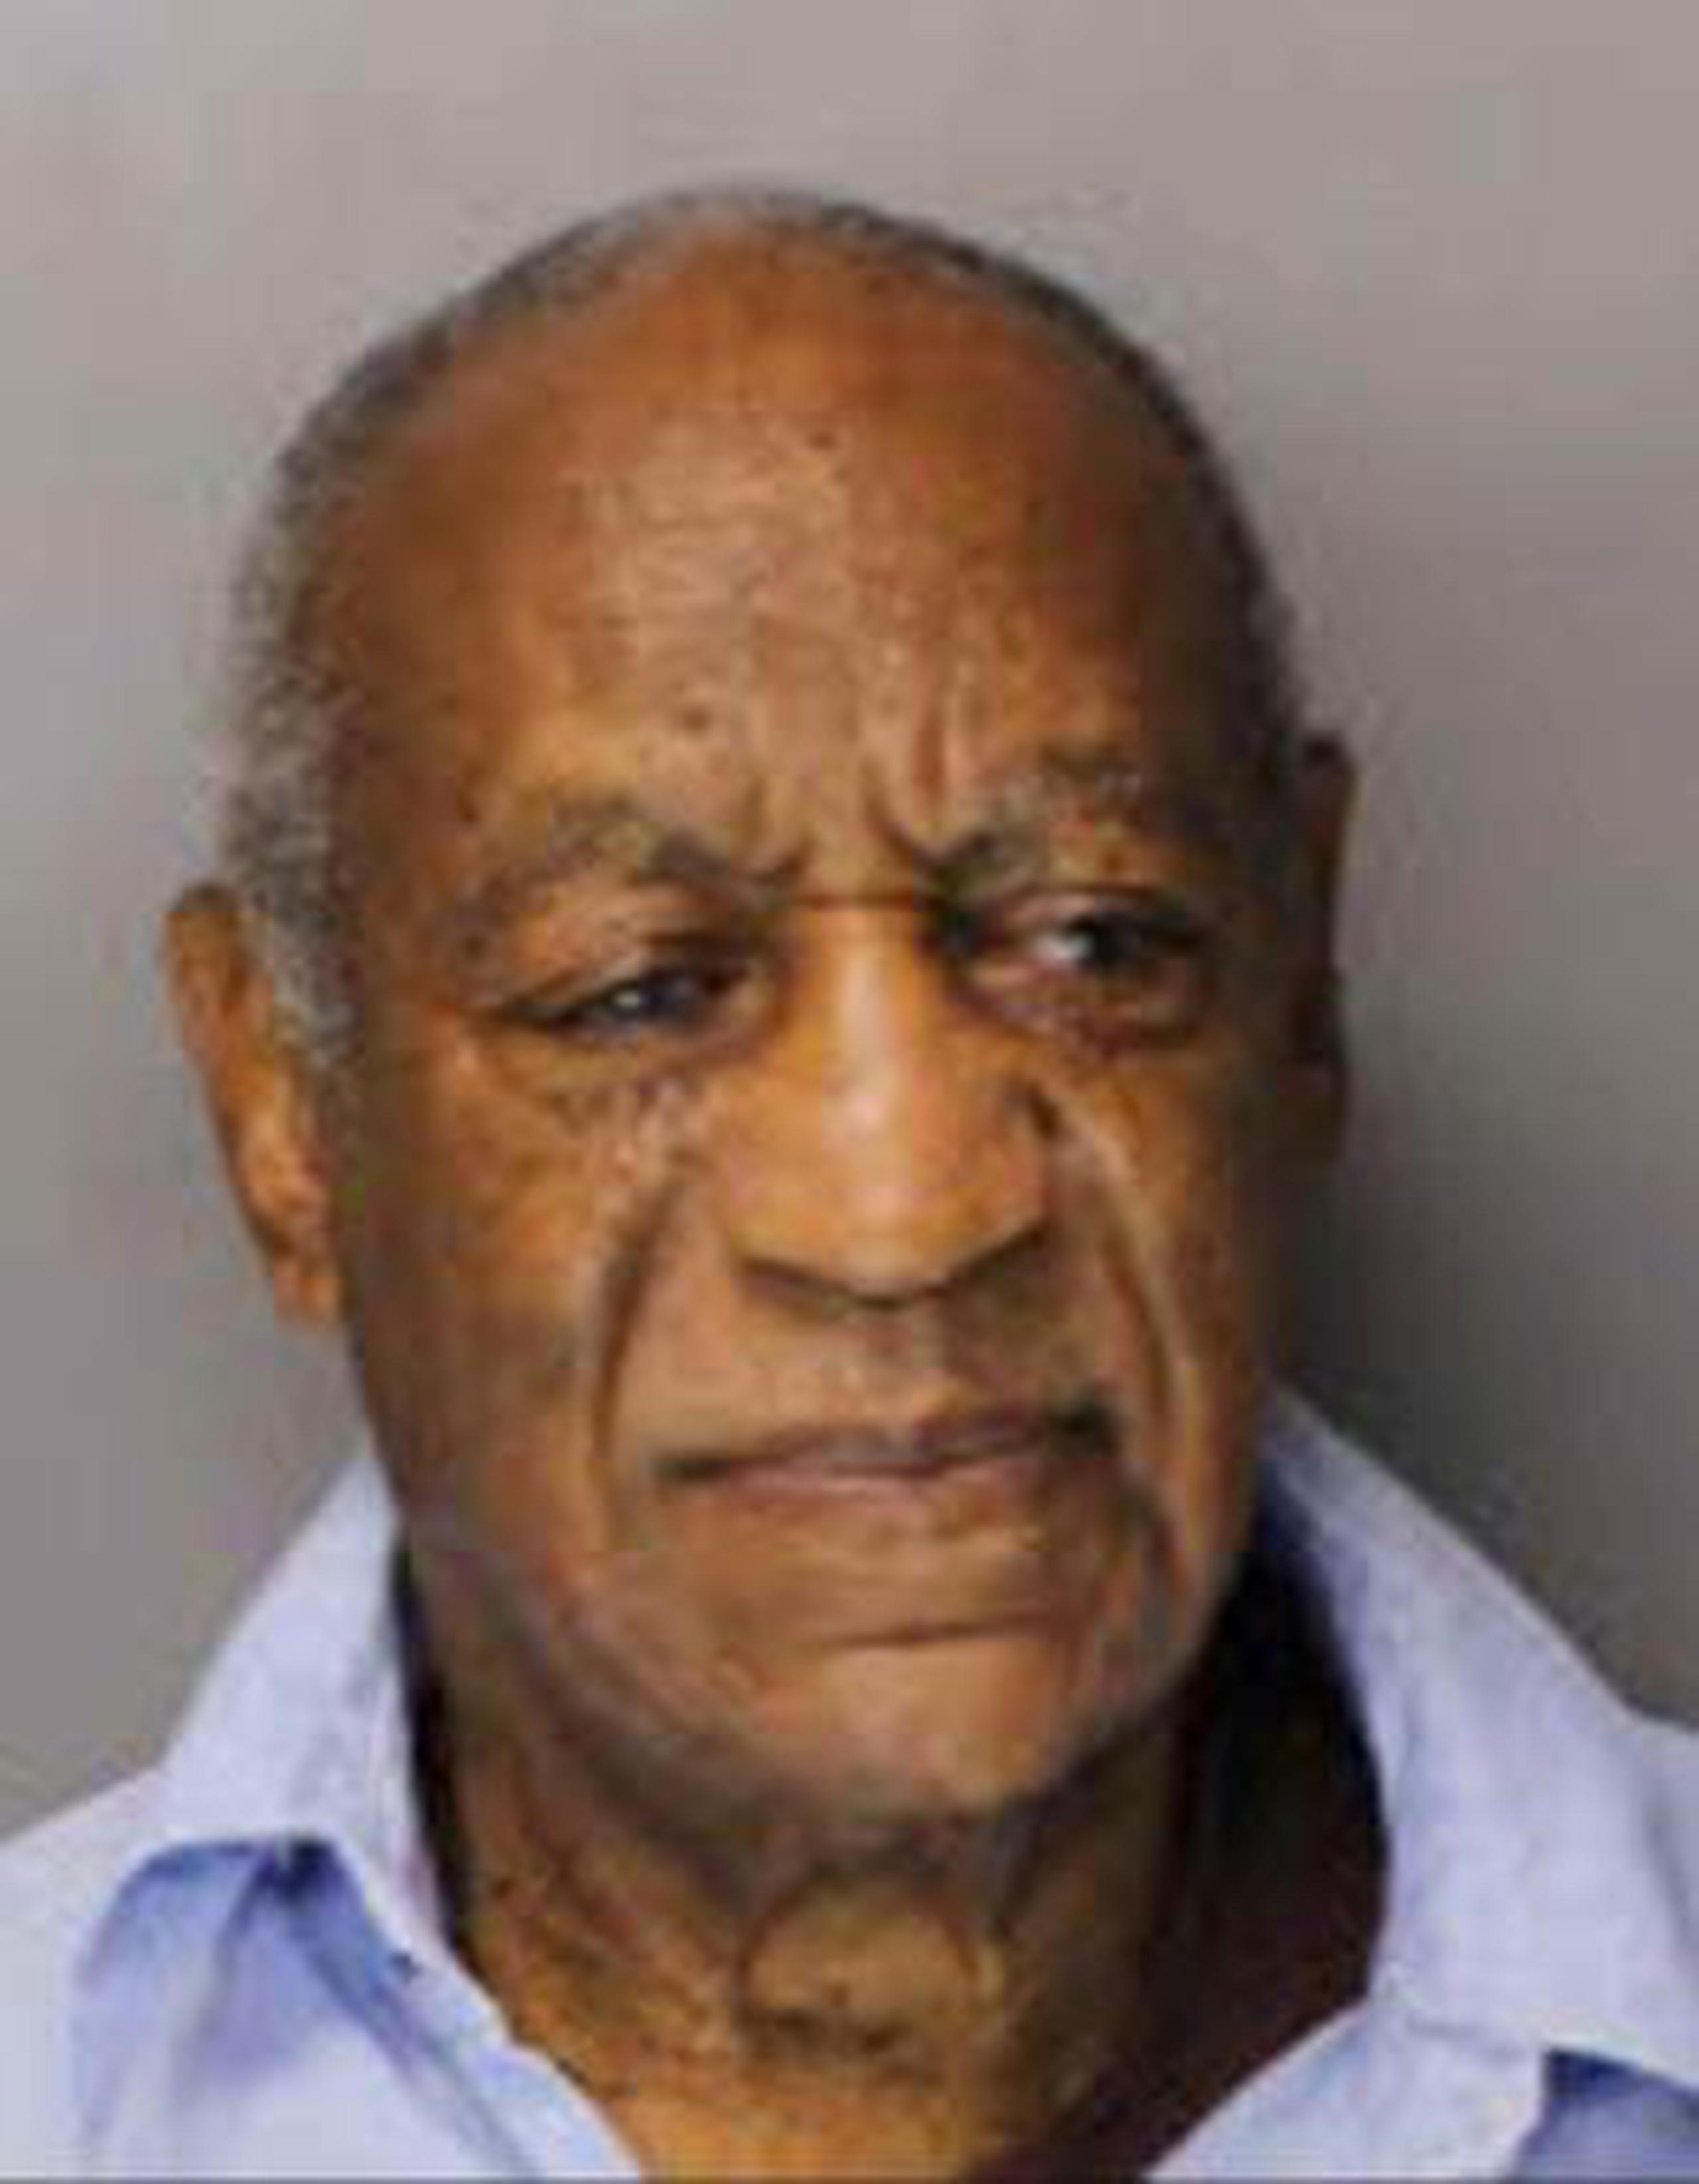 Ficha de Bill Cosby luego de que fue sentenciado a prisión. (Departamento de Corrección de Pensilvania vía AP)